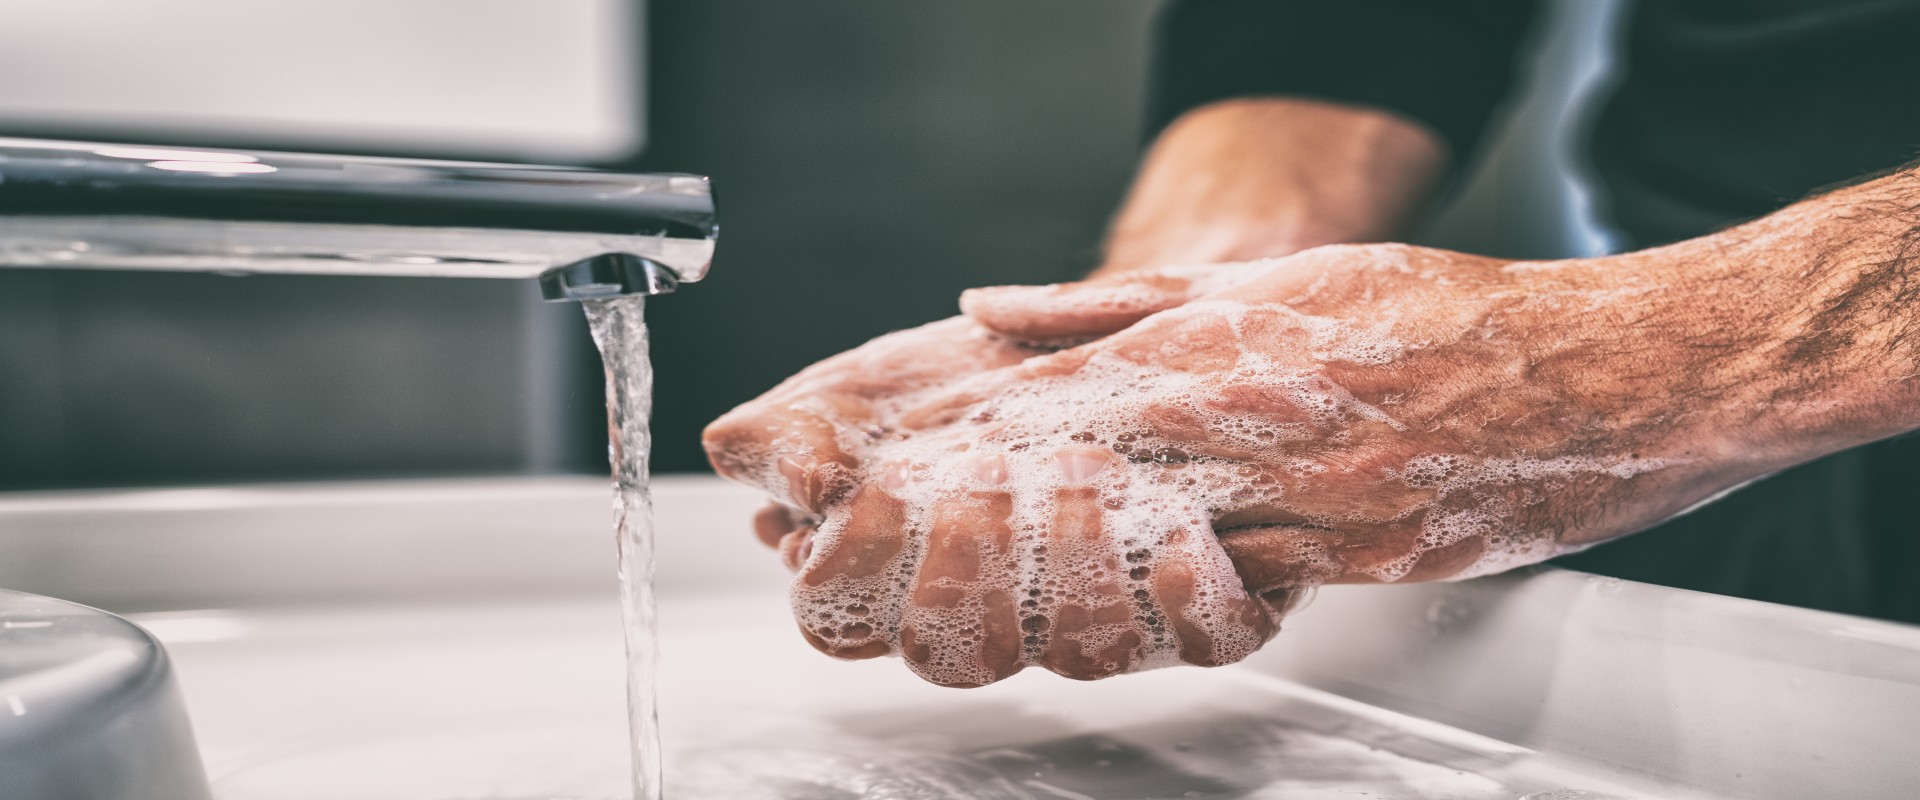 Comment nettoyer efficacement pour une bonne hygiène au quotidien?